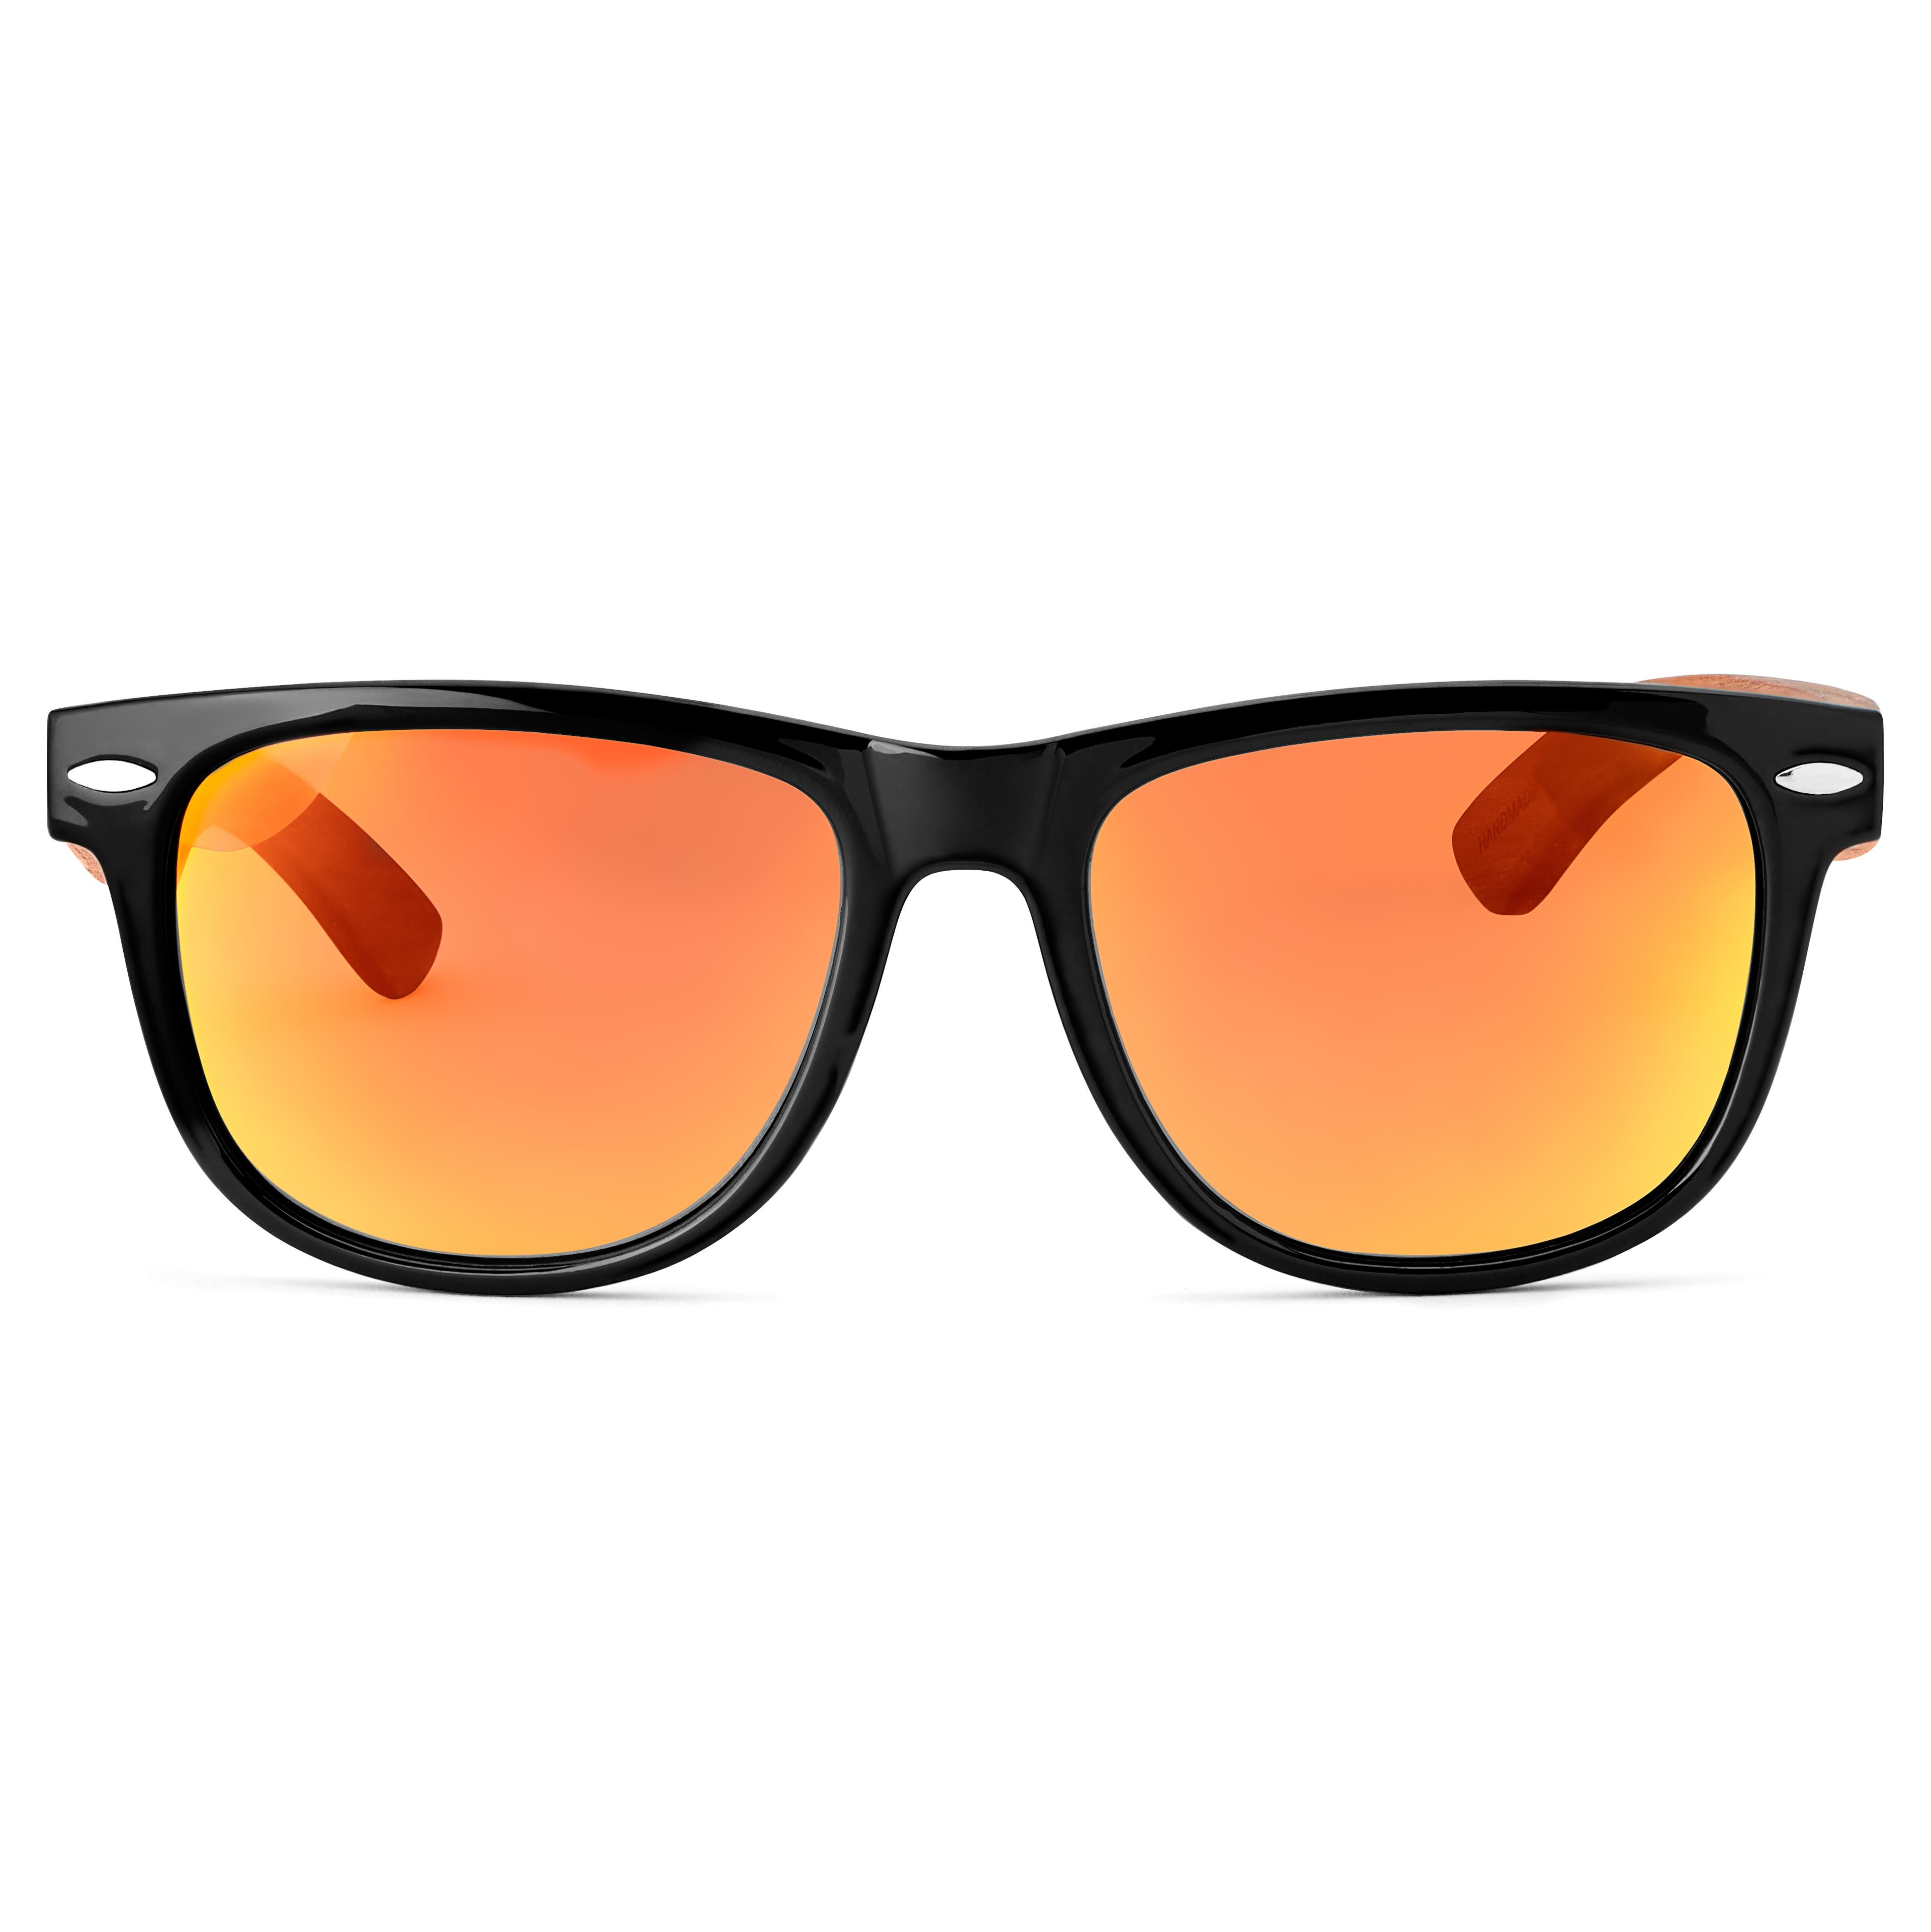 Gule Polariserede Solbriller med Brillestænger i Træ | På lager! Waykins